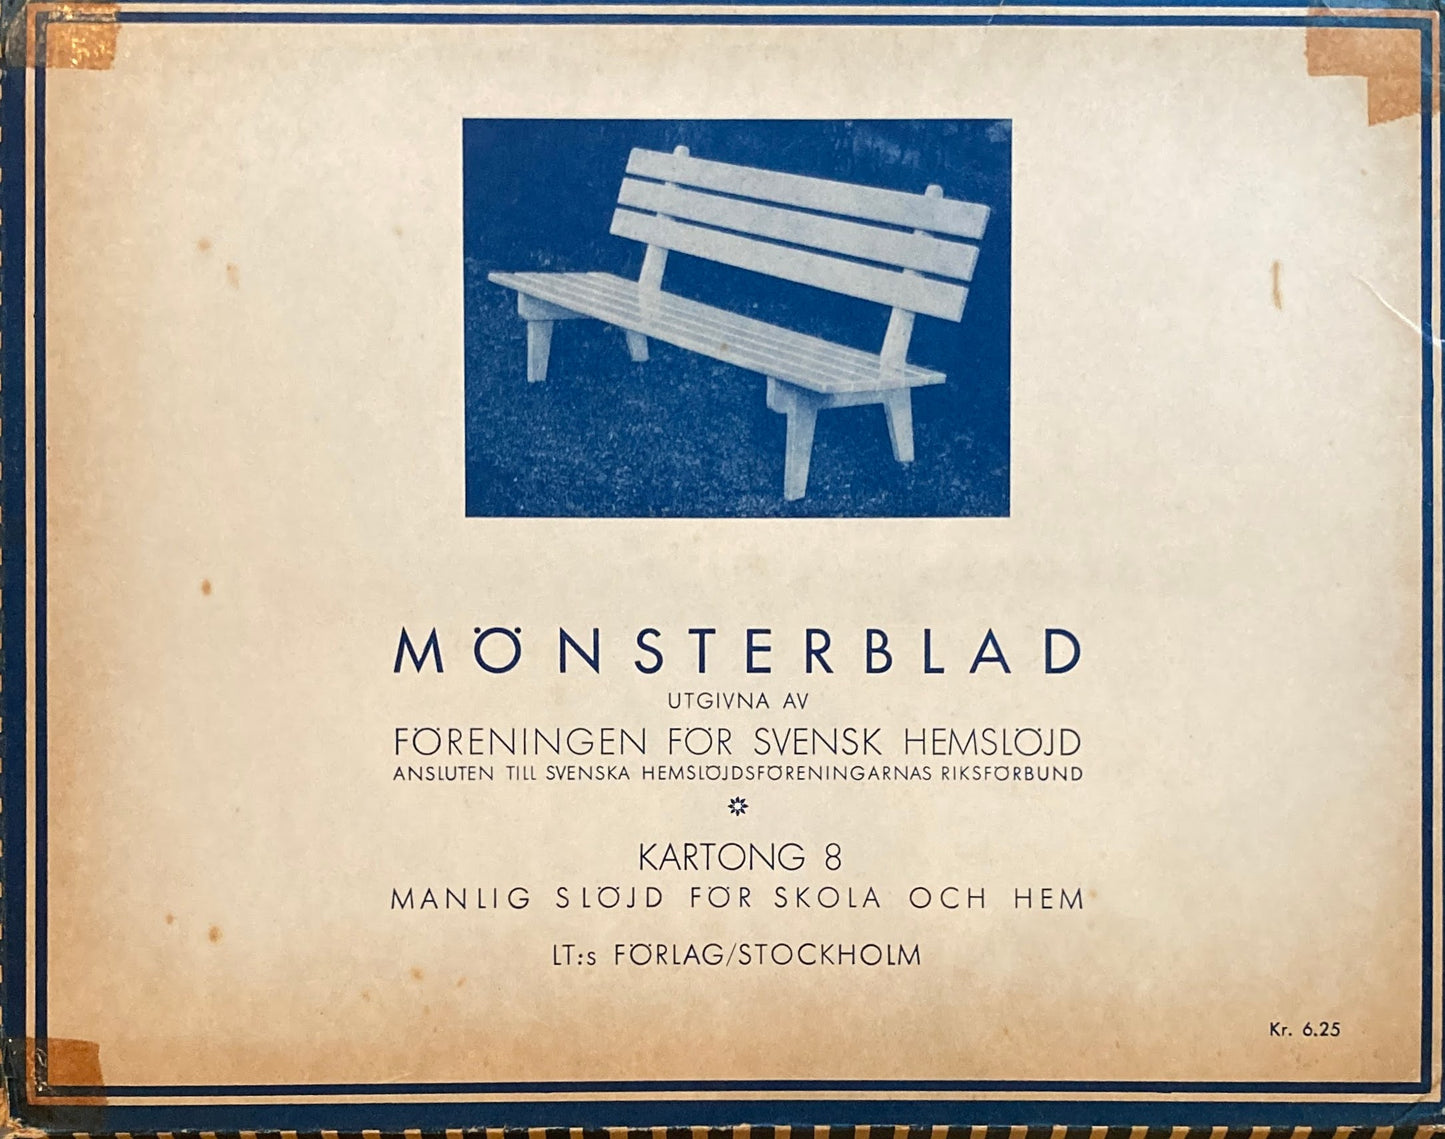 Monsterblad Utgivna av Foreningen for svensk hemslojd　Manlig slojd for skola och hem　KARTONG8　＜日曜大工＞ スウェーデン手工芸協会　